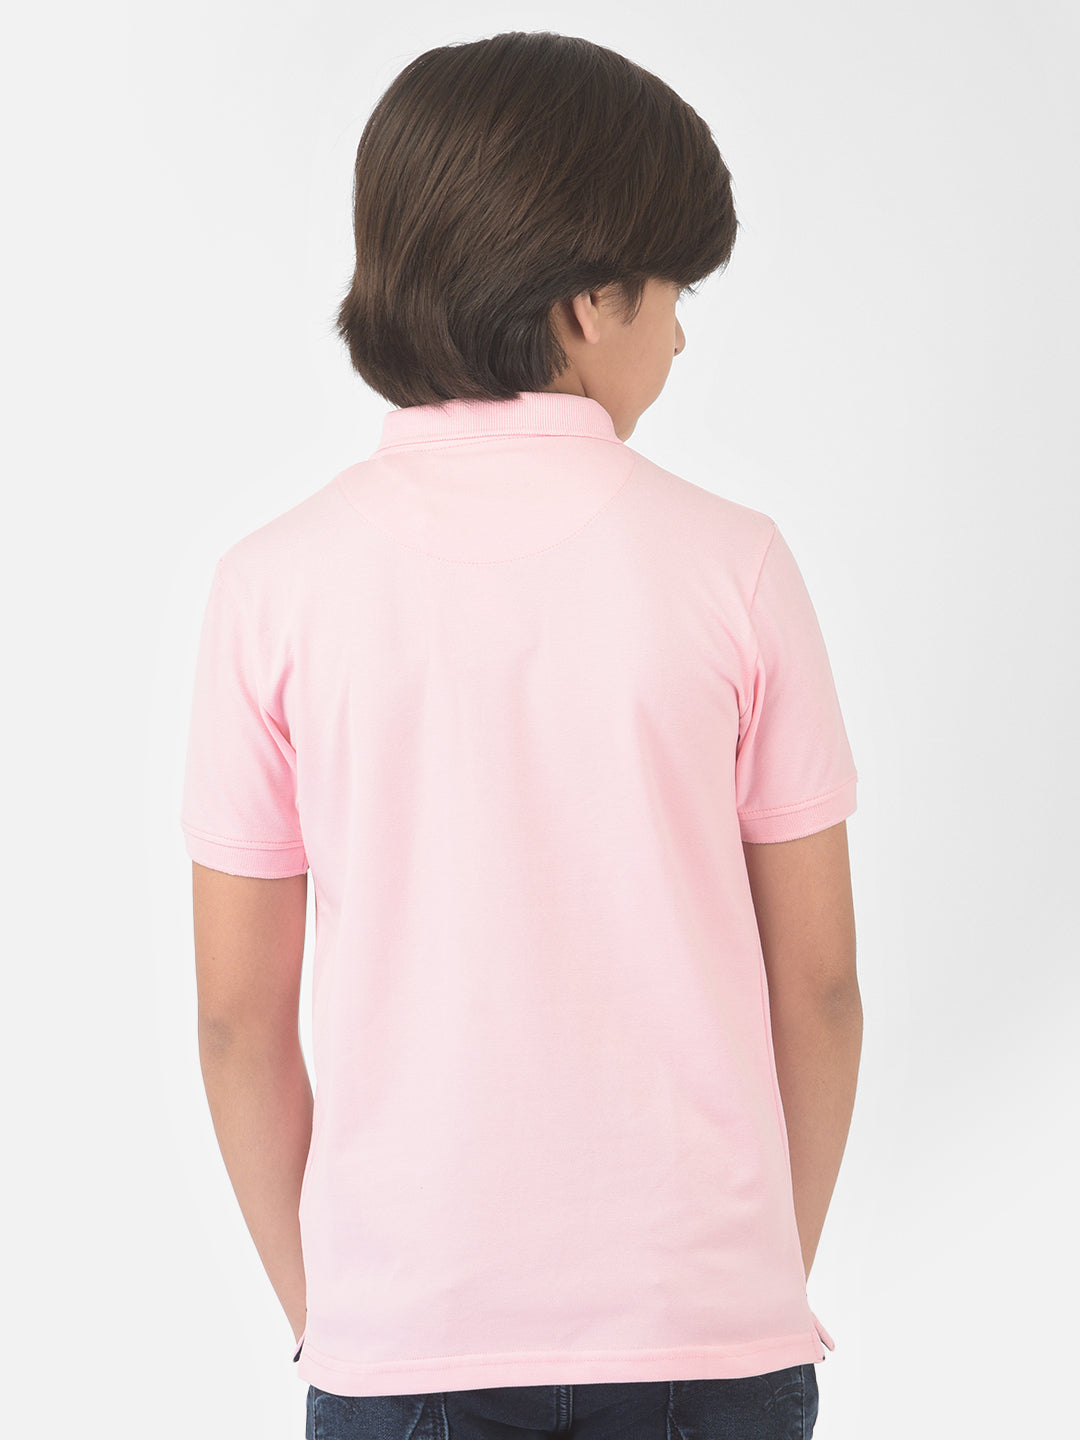 Pink Polo T-shirt - Boys T-Shirts